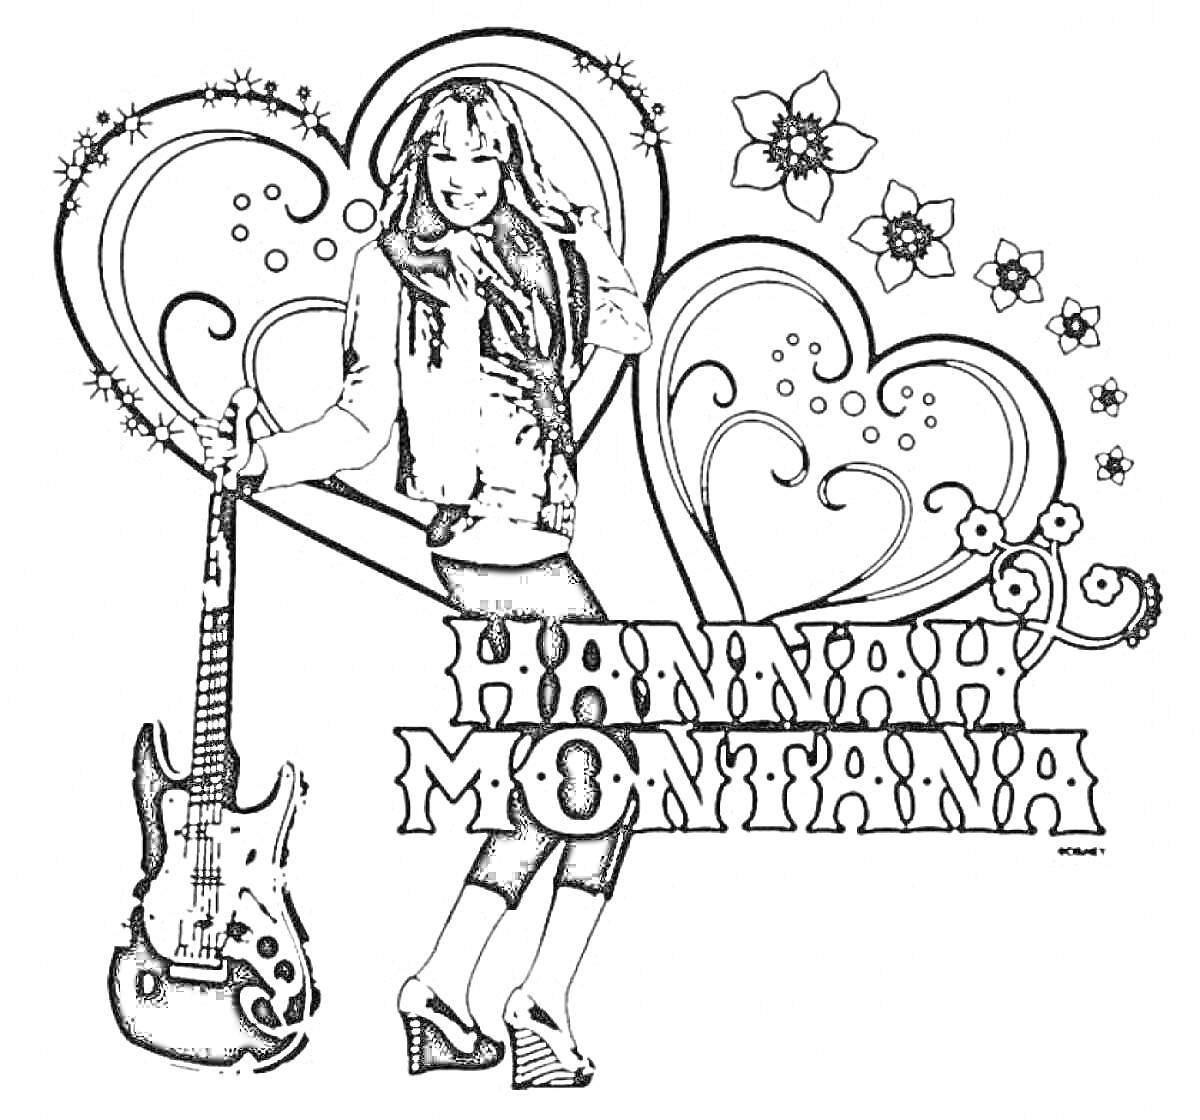 Ханна Монтана с гитарой, сердцами и цветами